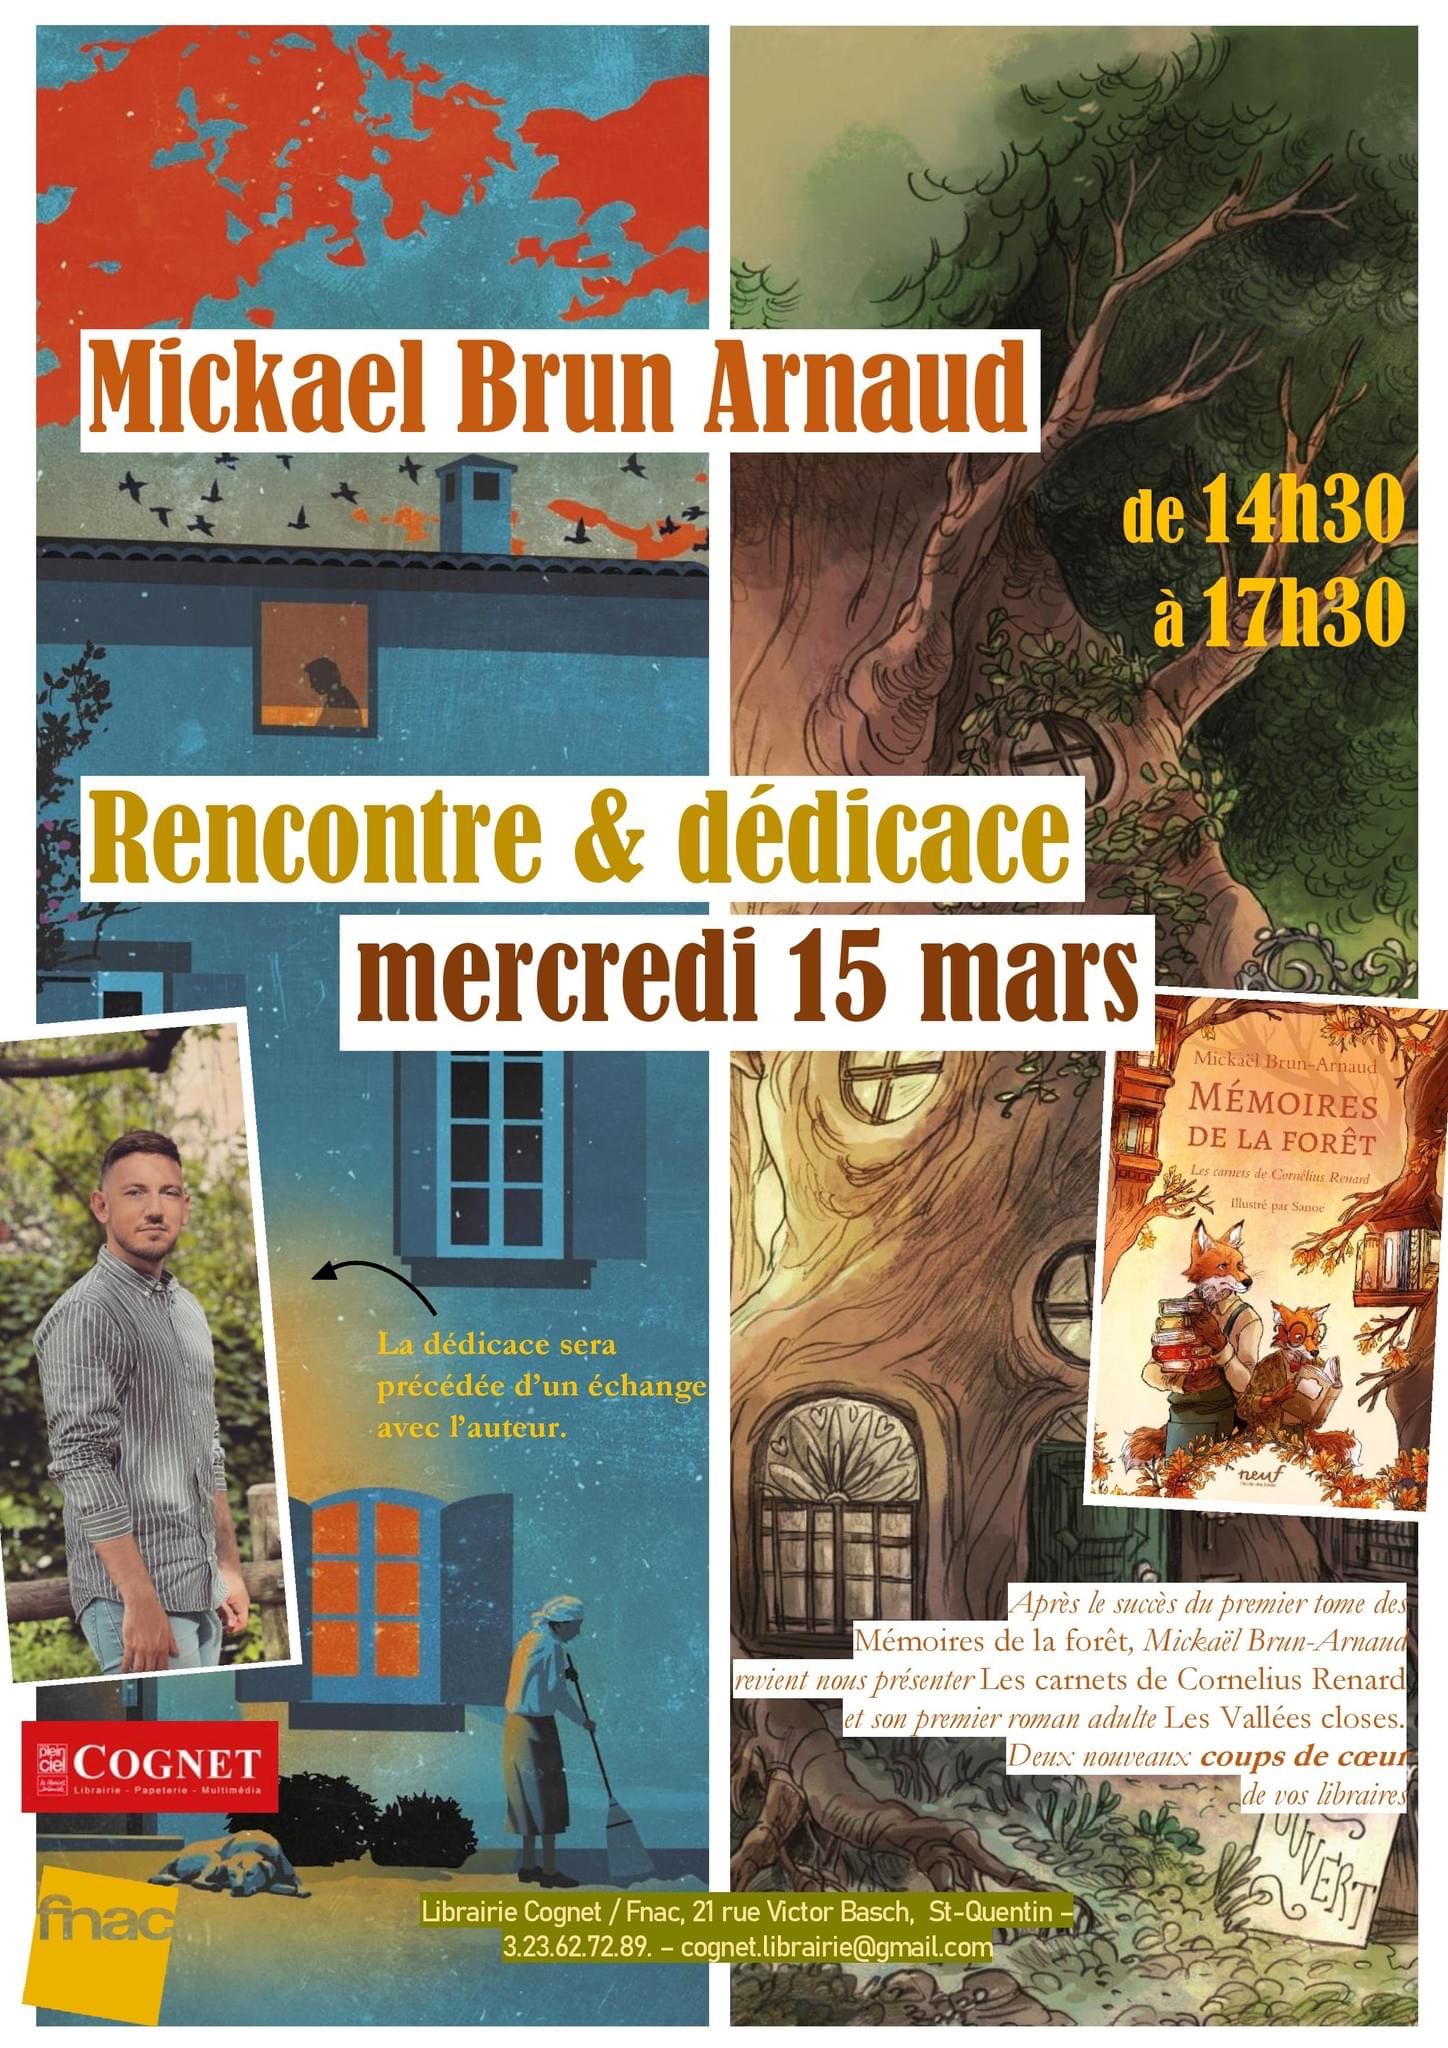 Rencontre Dédicace avec Mickaël Brun-Arnaud à la librairie Cognet/Fnac